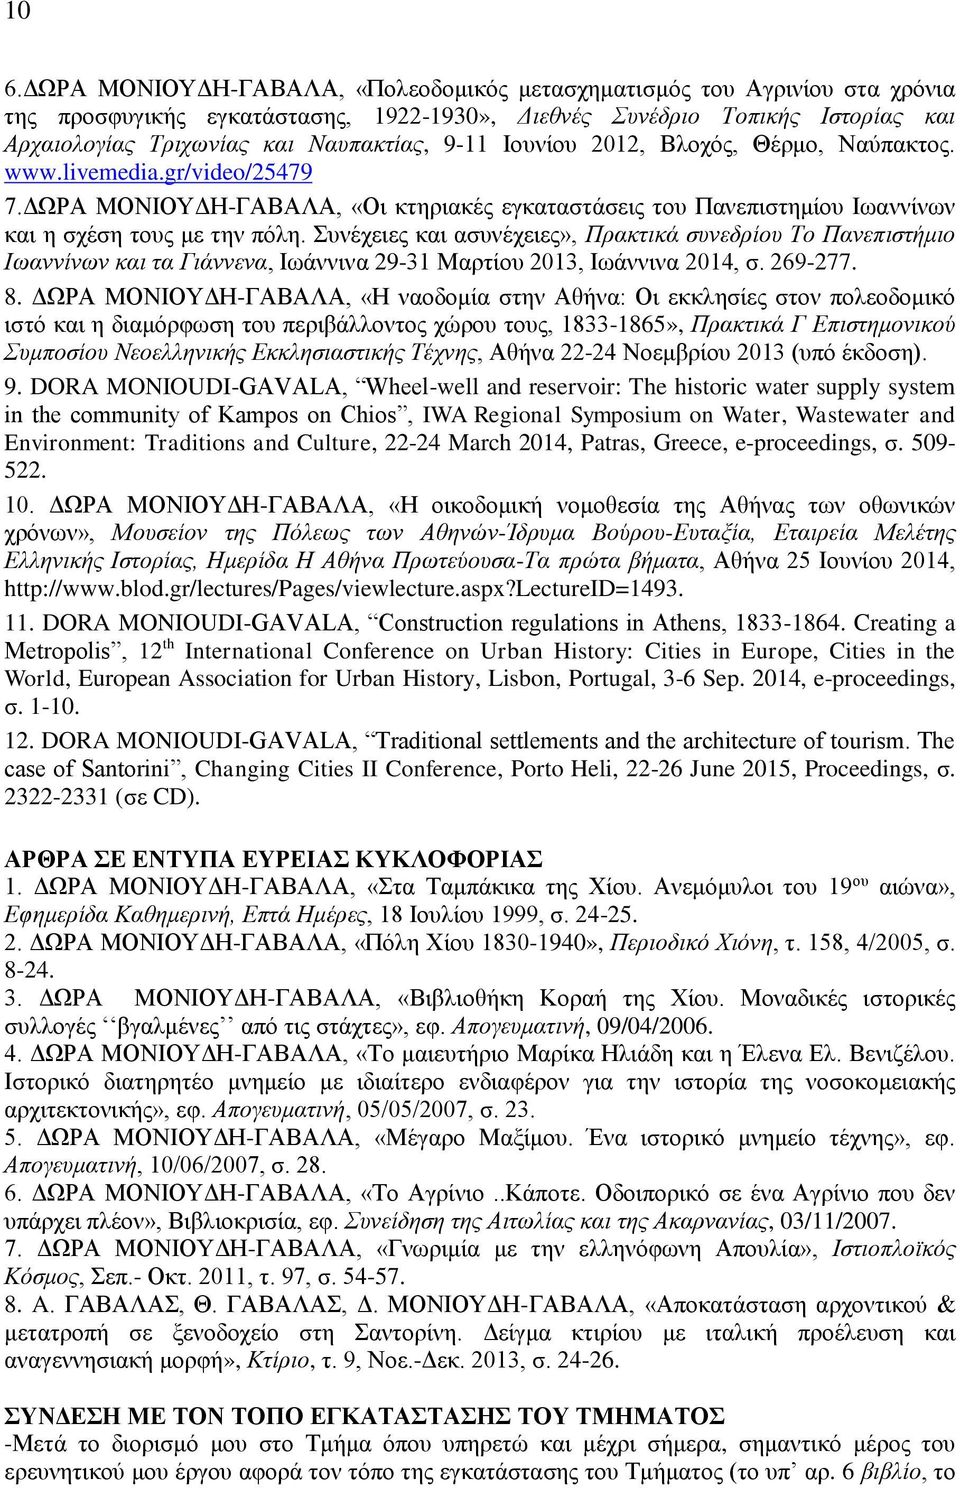 Συνέχειες και ασυνέχειες», Πρακτικά συνεδρίου Το Πανεπιστήμιο Ιωαννίνων και τα Γιάννενα, Ιωάννινα 29-31 Μαρτίου 2013, Ιωάννινα 2014, σ. 269-277. 8.